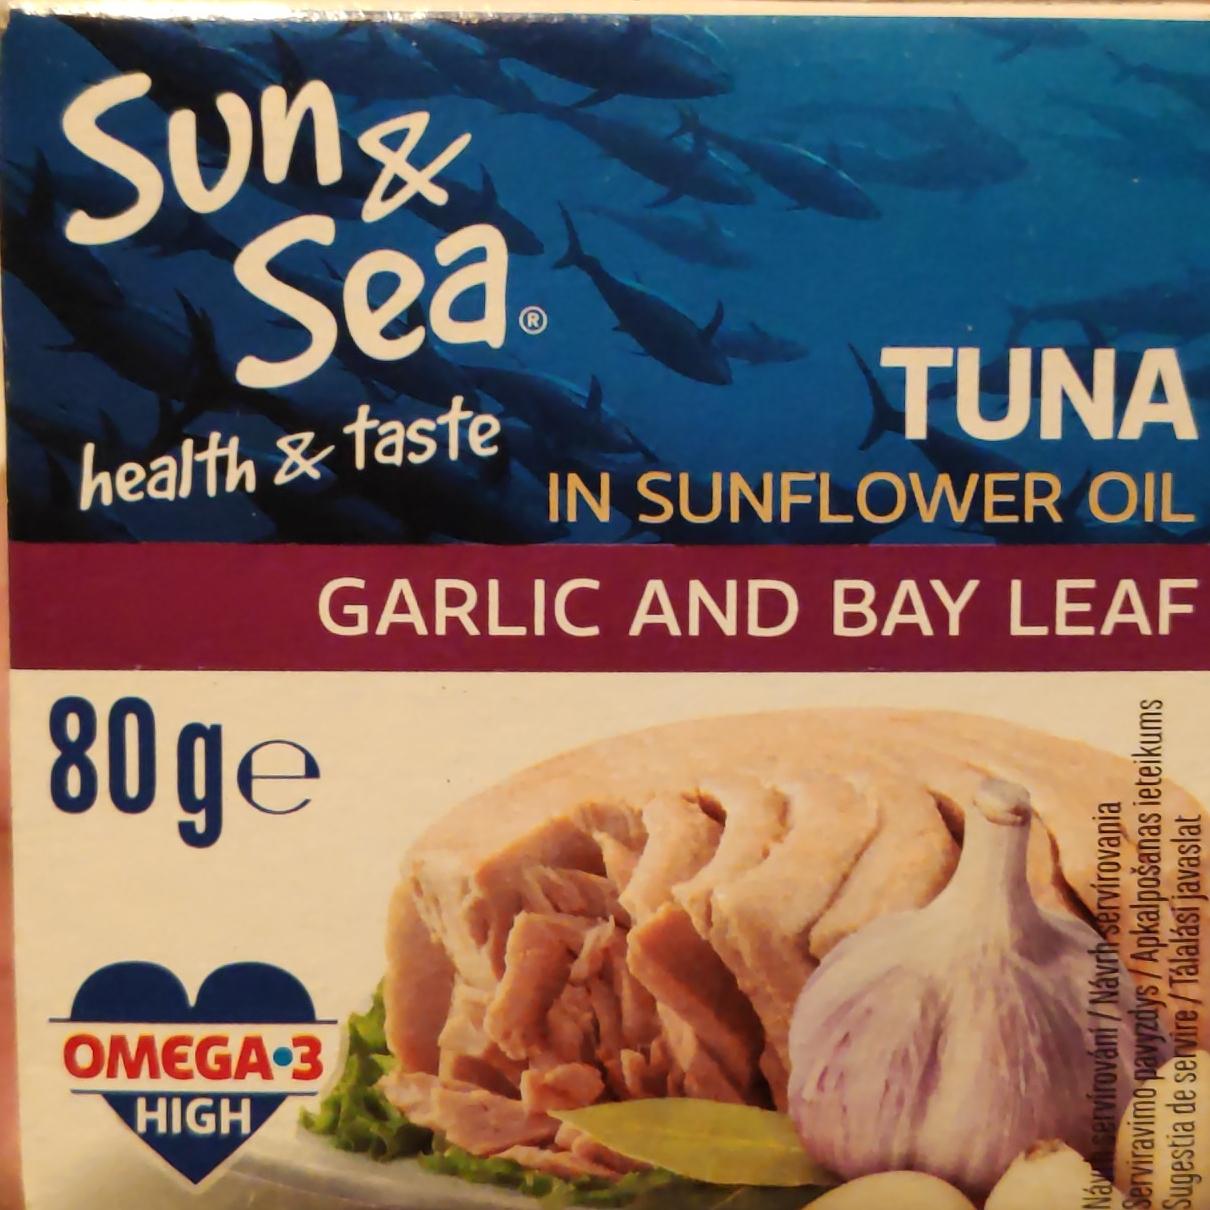 Képek - Tuna in sunflower oil garlic and bay leaf Sun & Sea